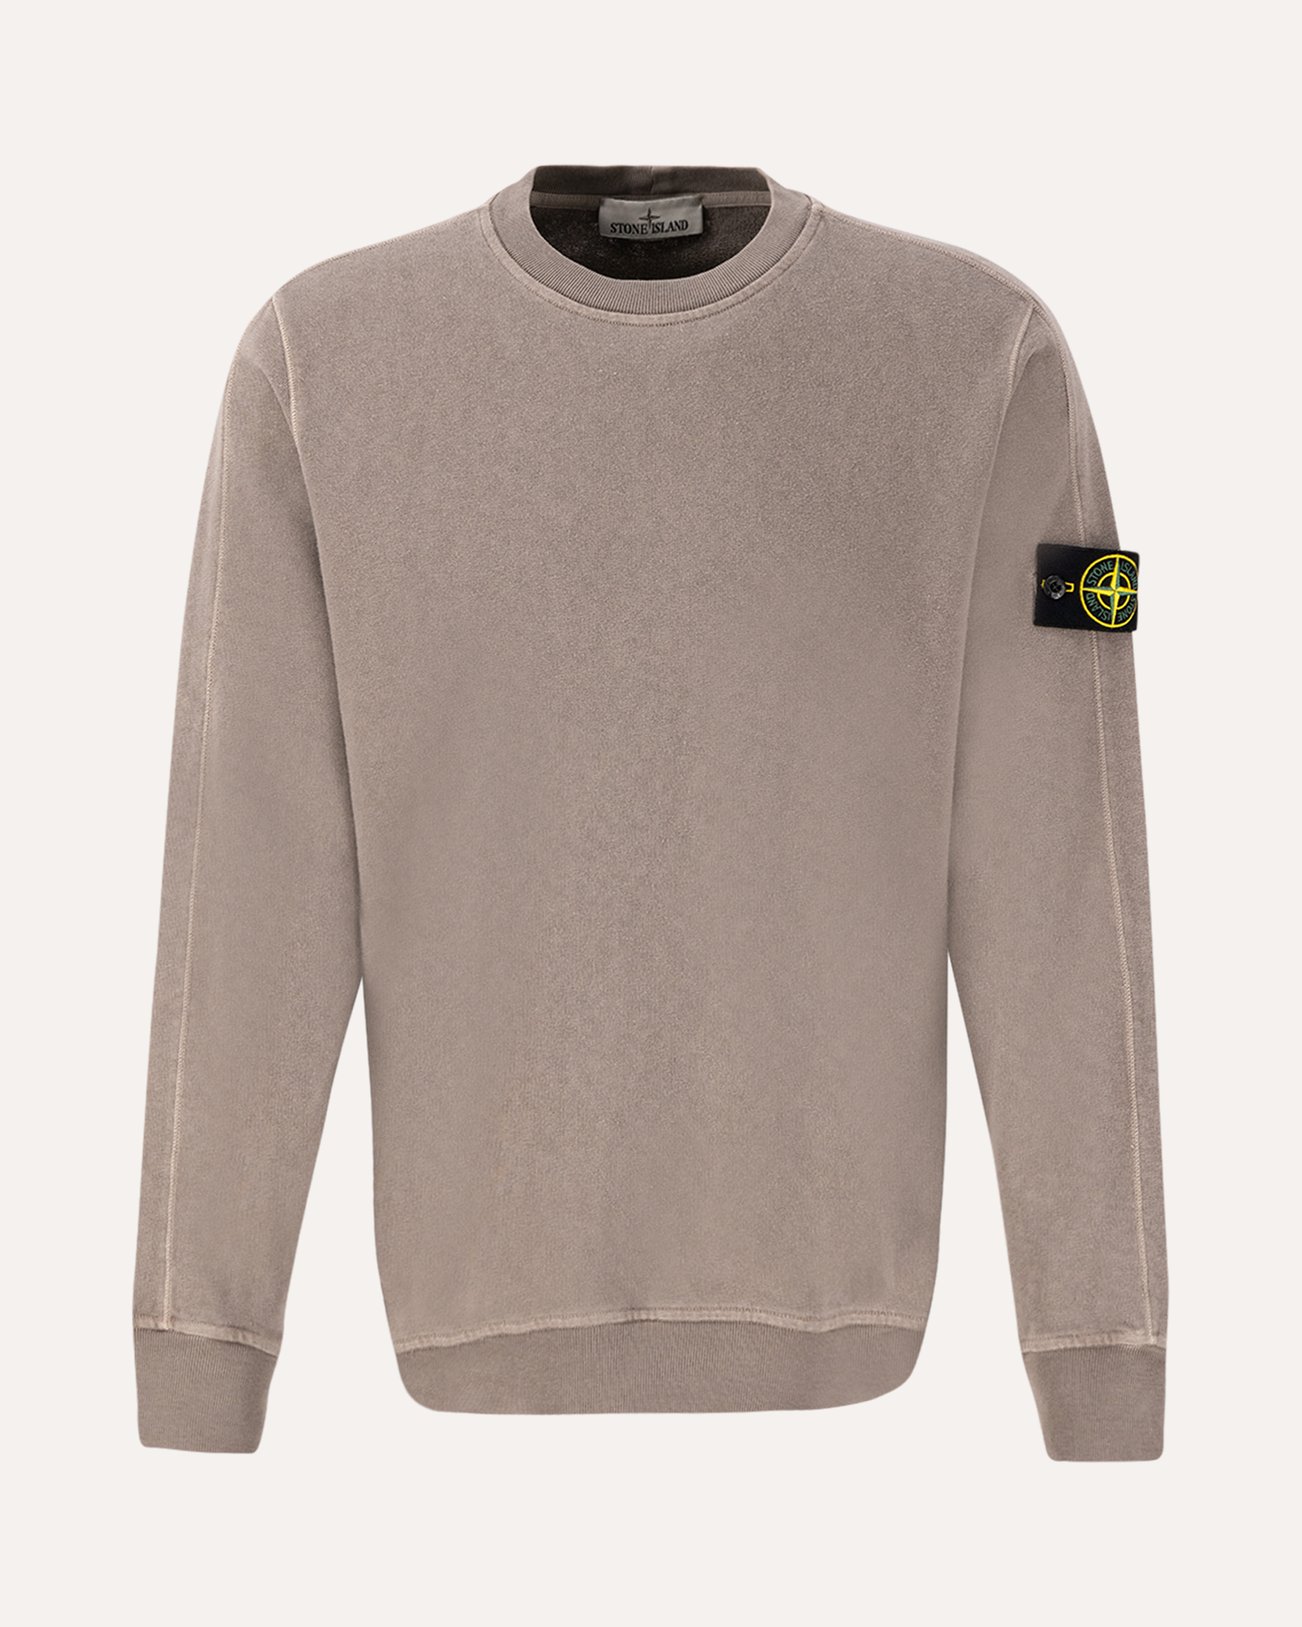 Stone Island 66060 Malfile Fleece Garment Dyed 'Old' Effect Crewneck Sweatshirt GRIJS 1